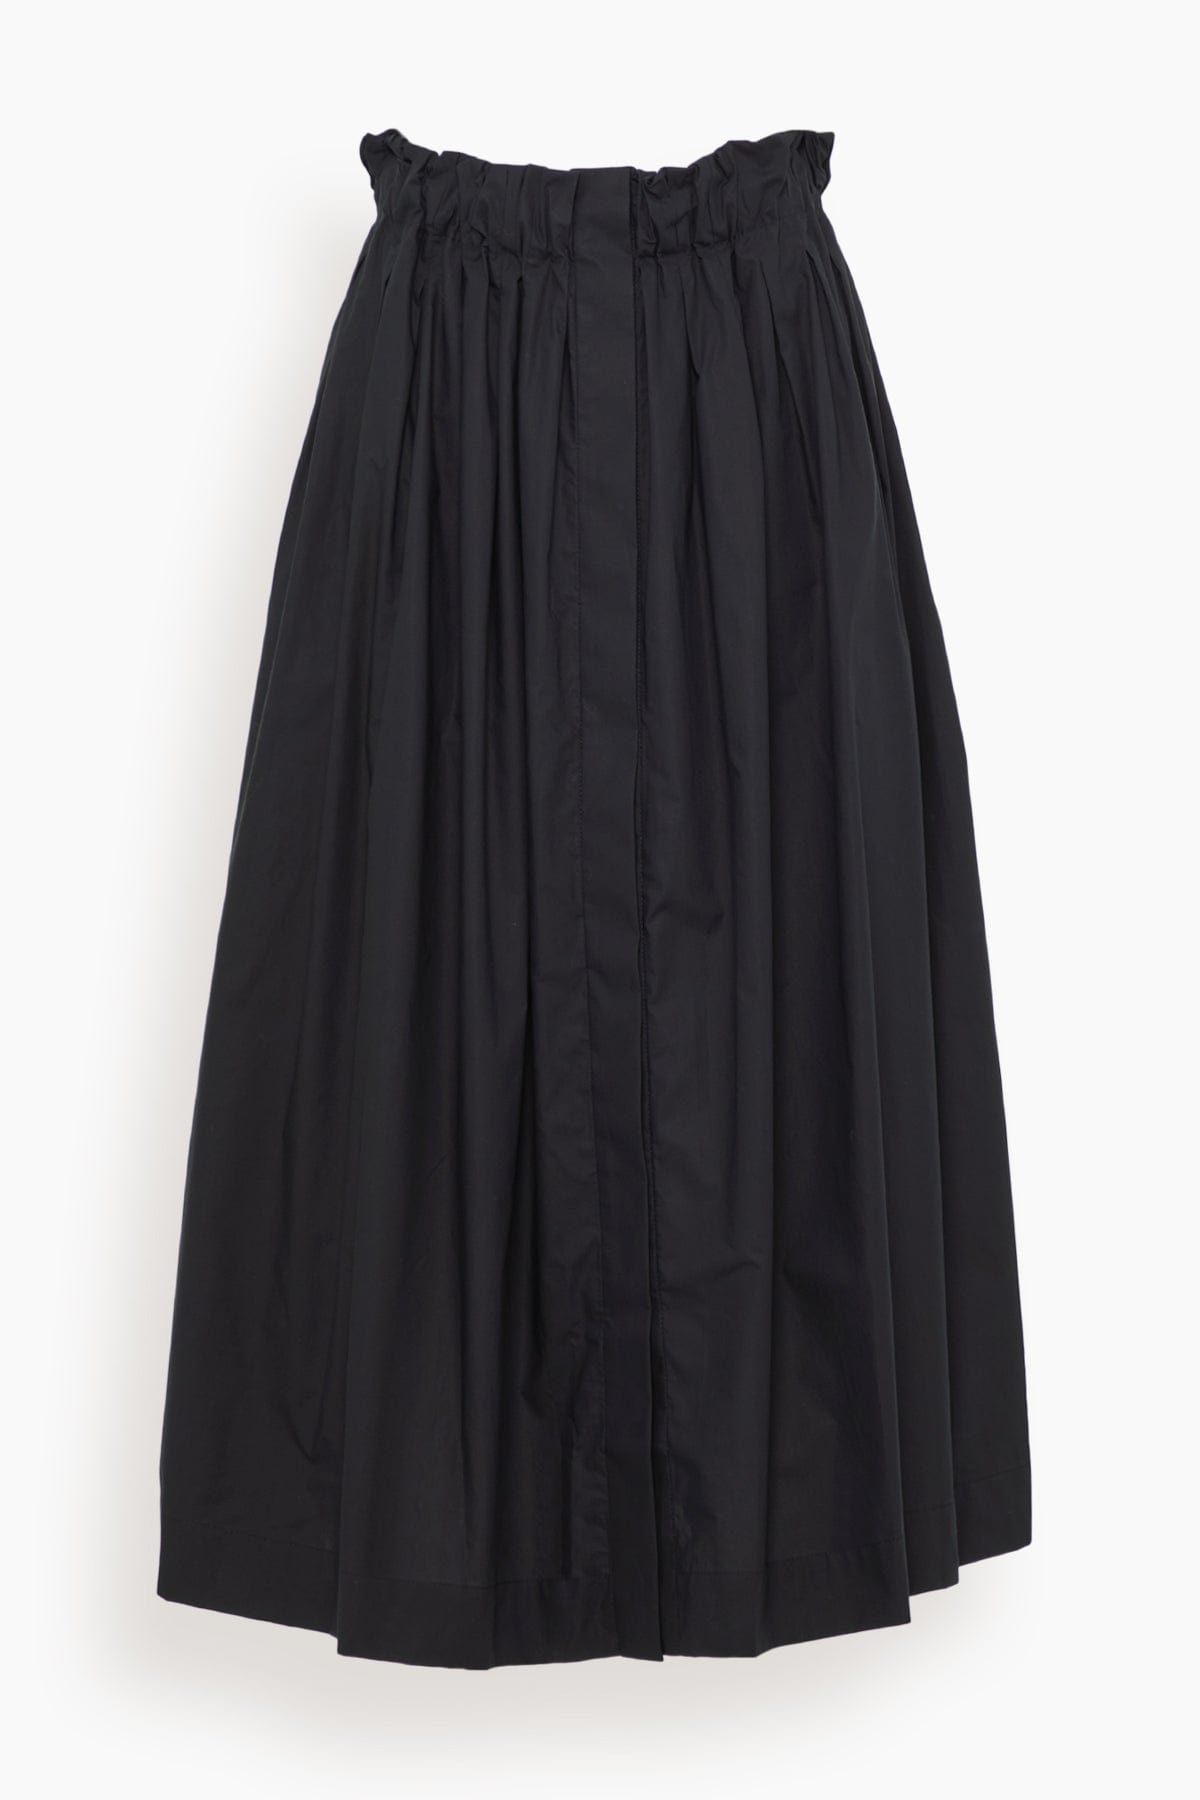 Hill Skirt in Black - 1